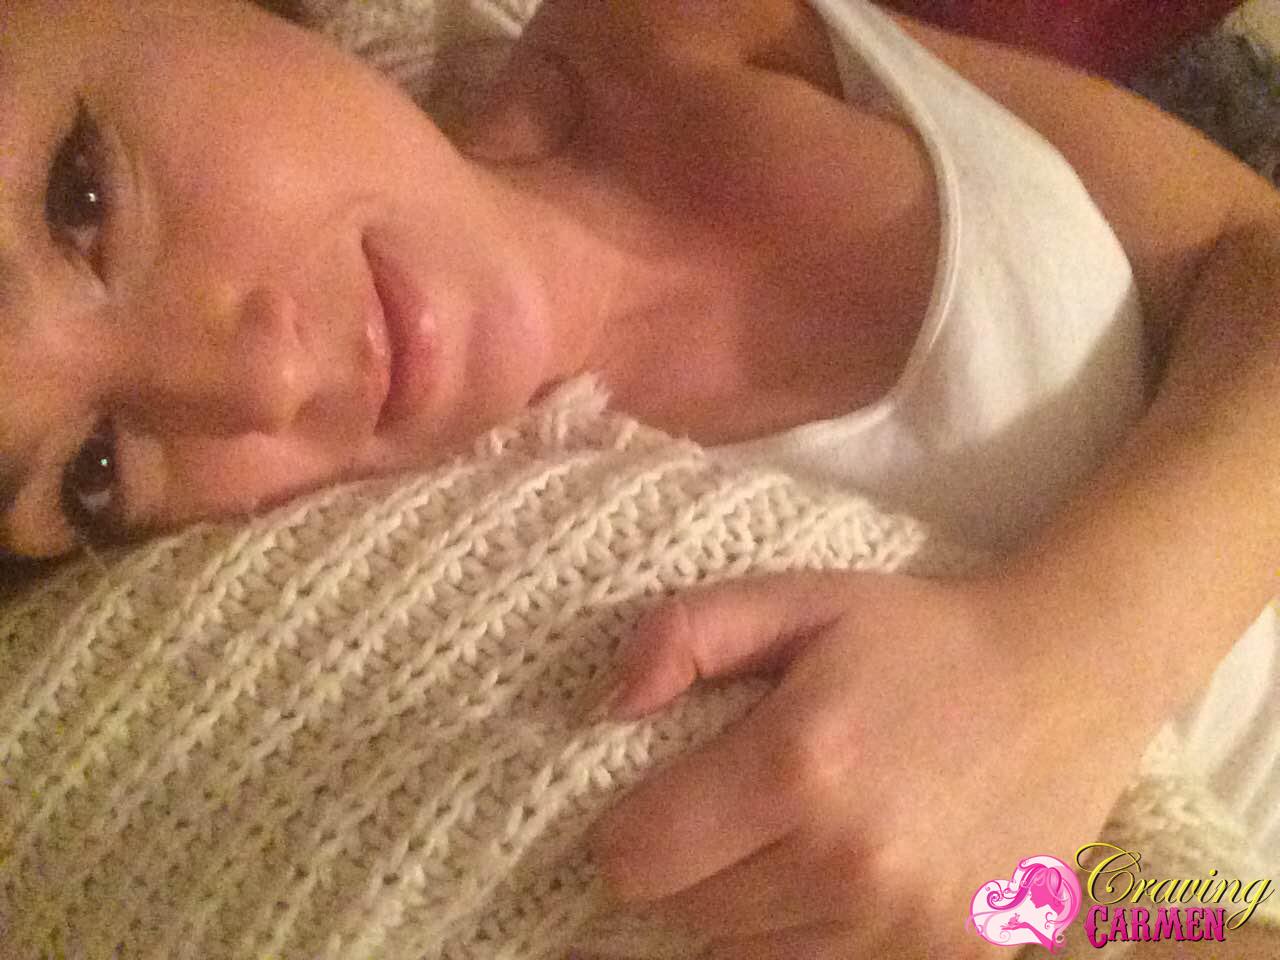 Craving carmen macht sich nackt und nimmt Selfies im Bett
 #53874242